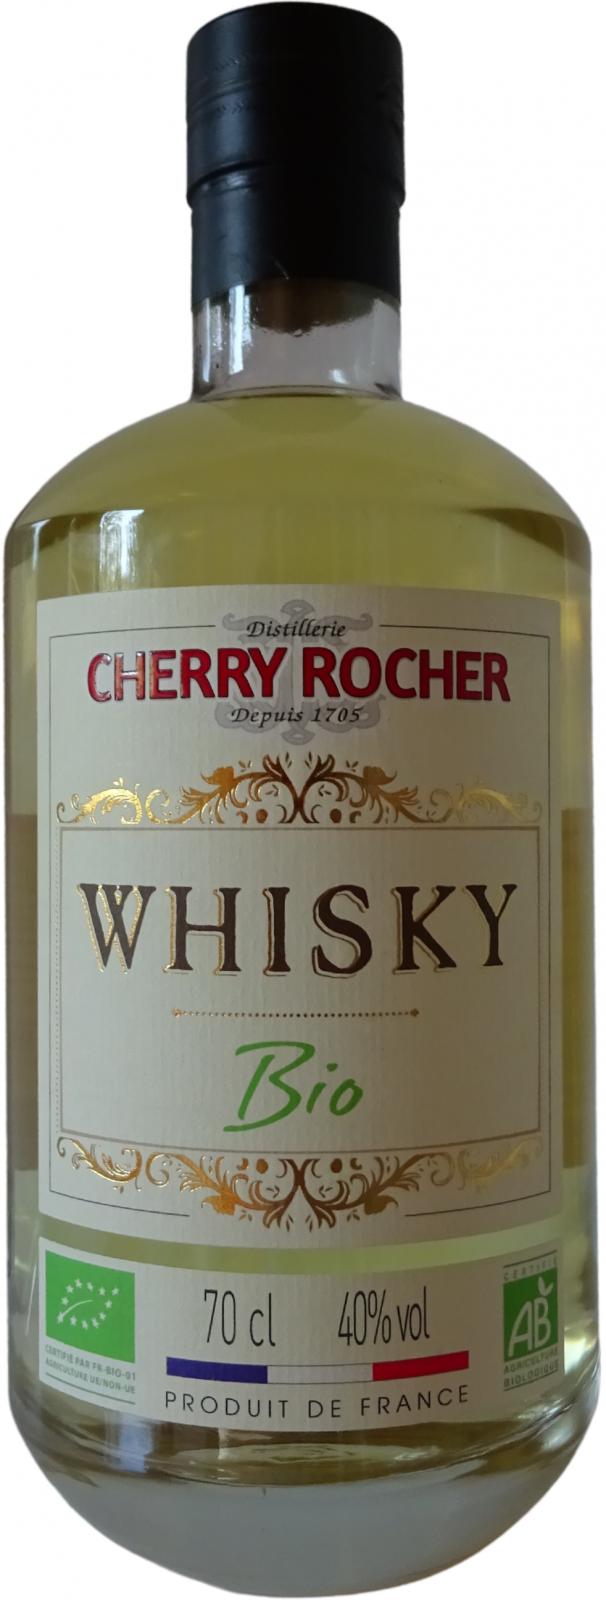 Cherry-Rocher Bio 40% 700ml